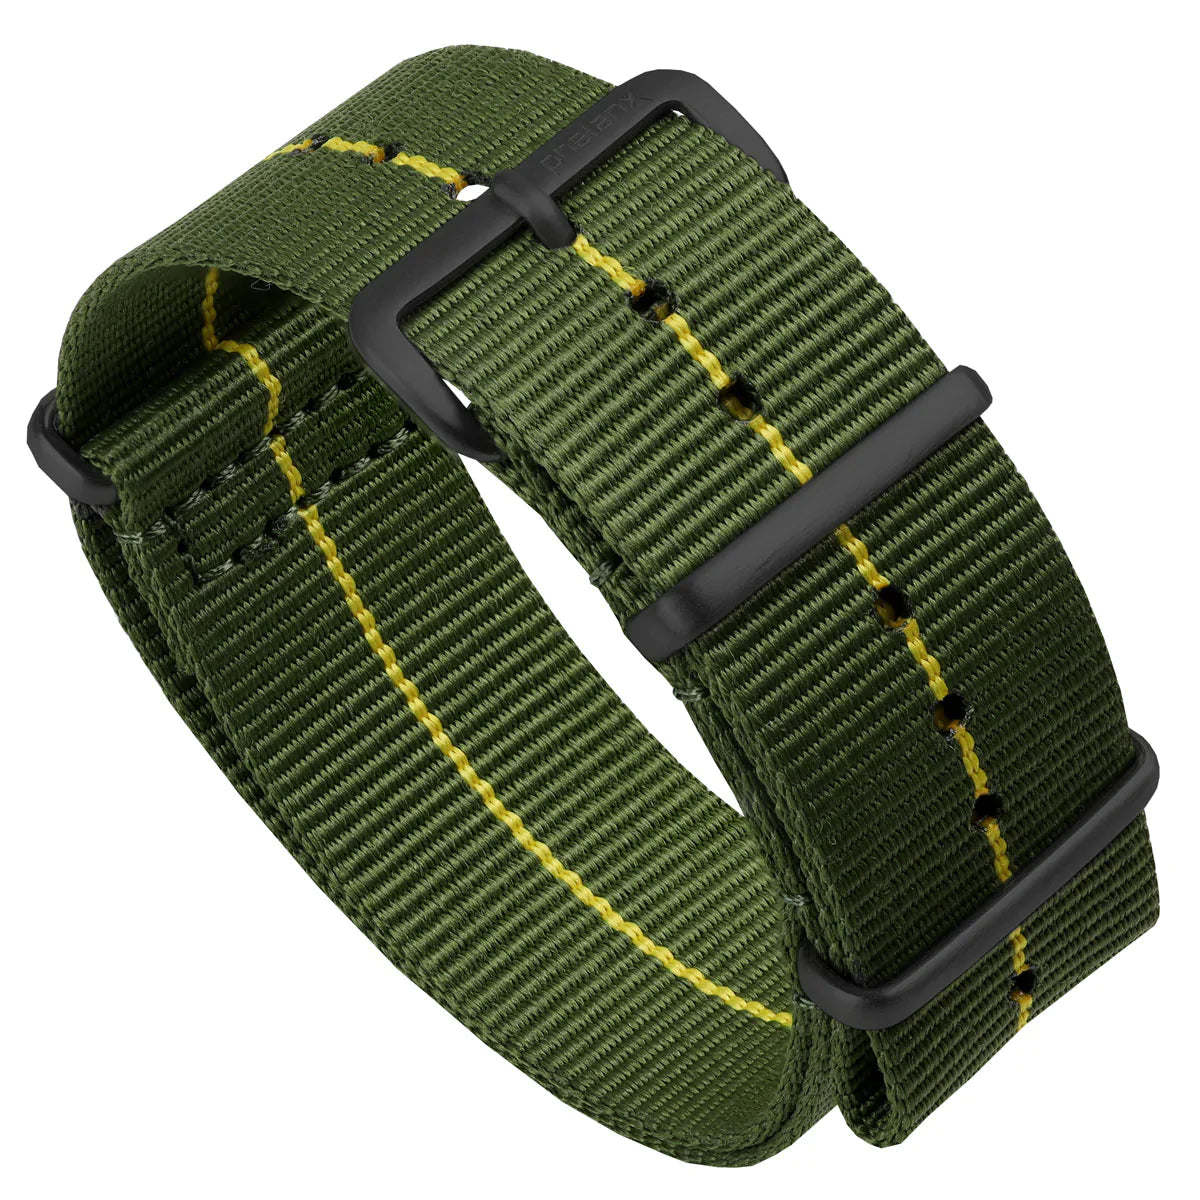 Phalanx Marine Nationale Military Nylon Watch Strap - Green/Yellow - IPB